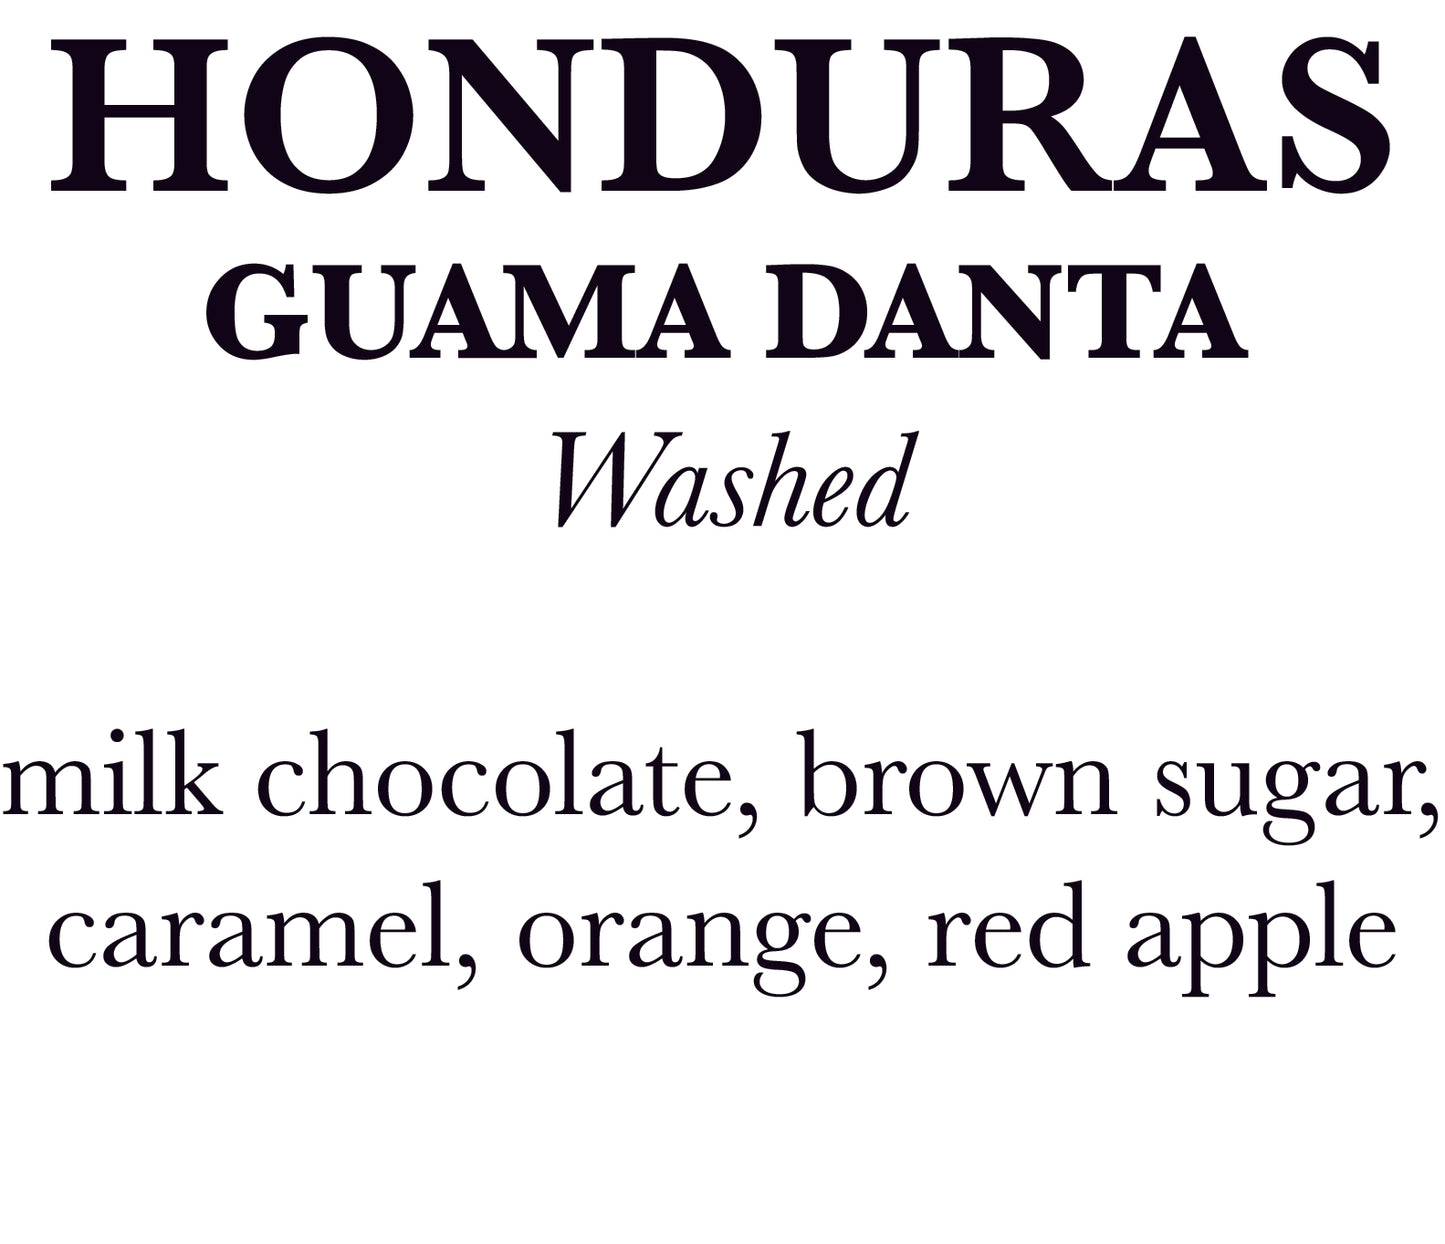 Honduras Guama Danta